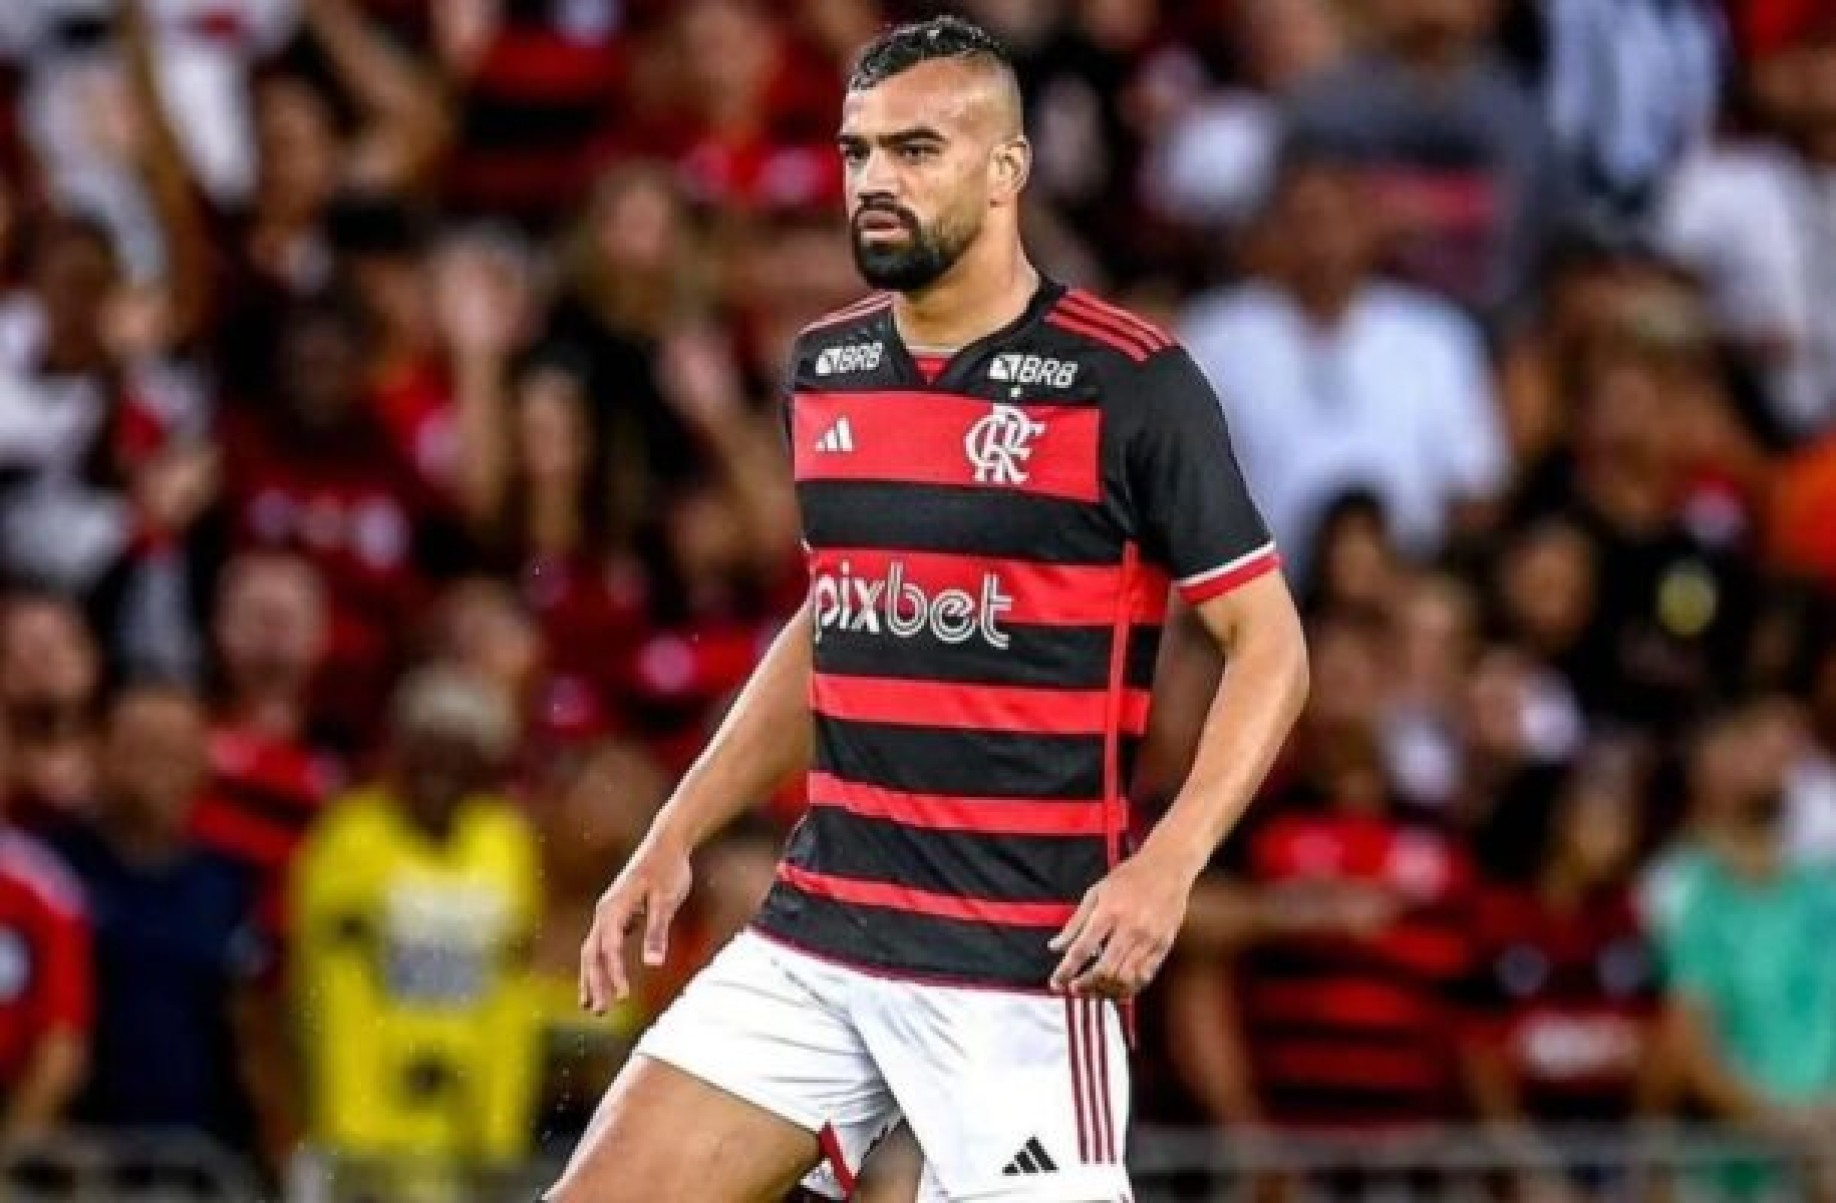 Fabrício Bruno não entra em acordo com West Ham e pode ficar no Flamengo; entenda